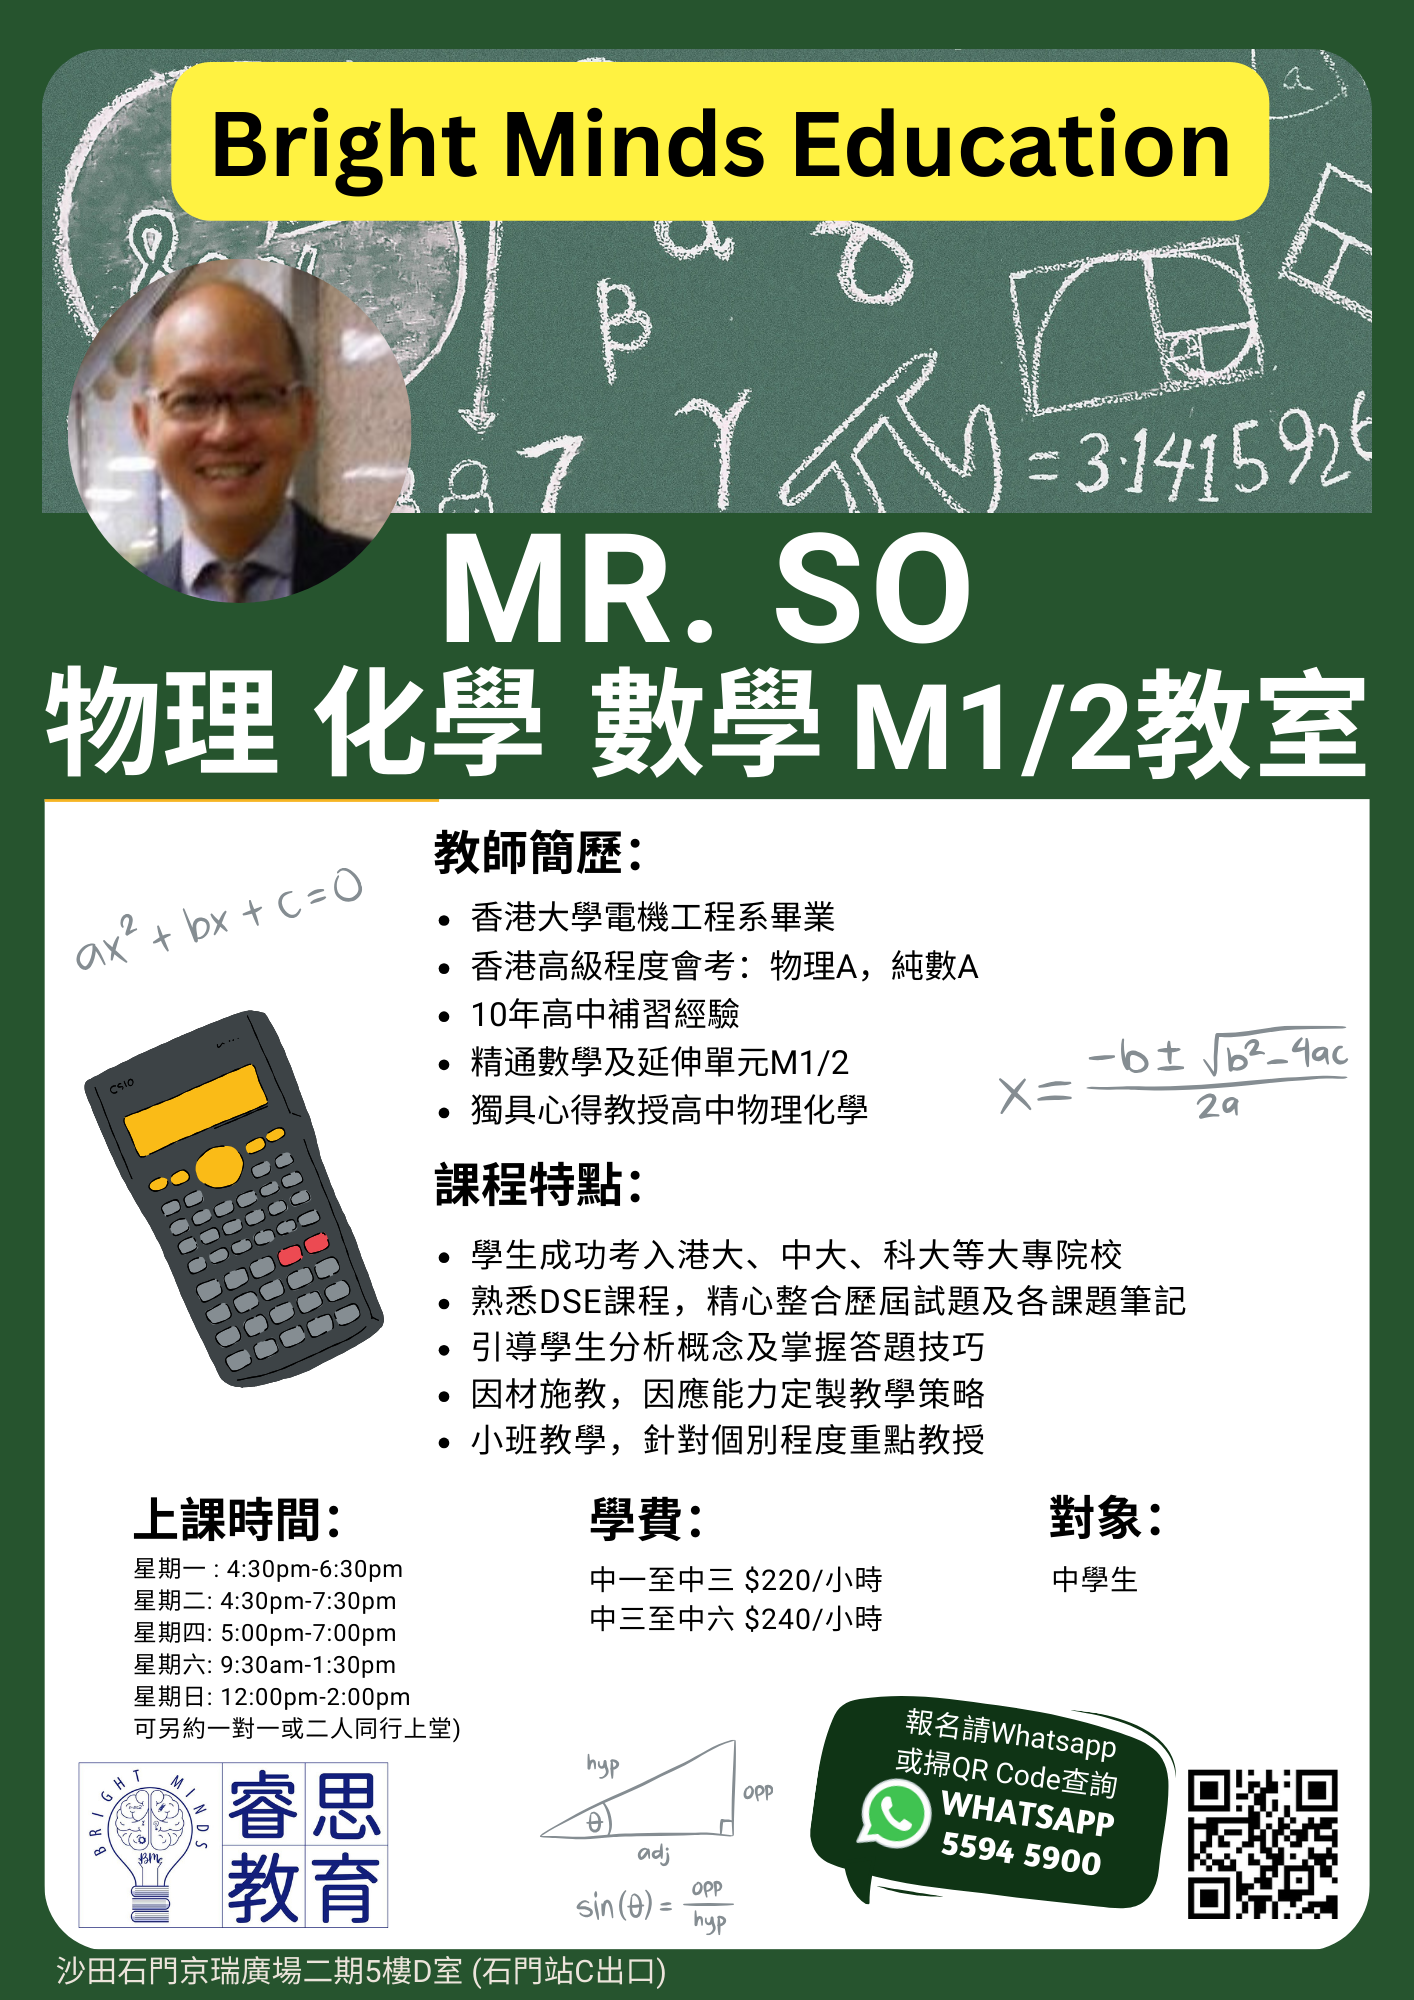 Mr. So 物理/化學/數學/M1/2 課程